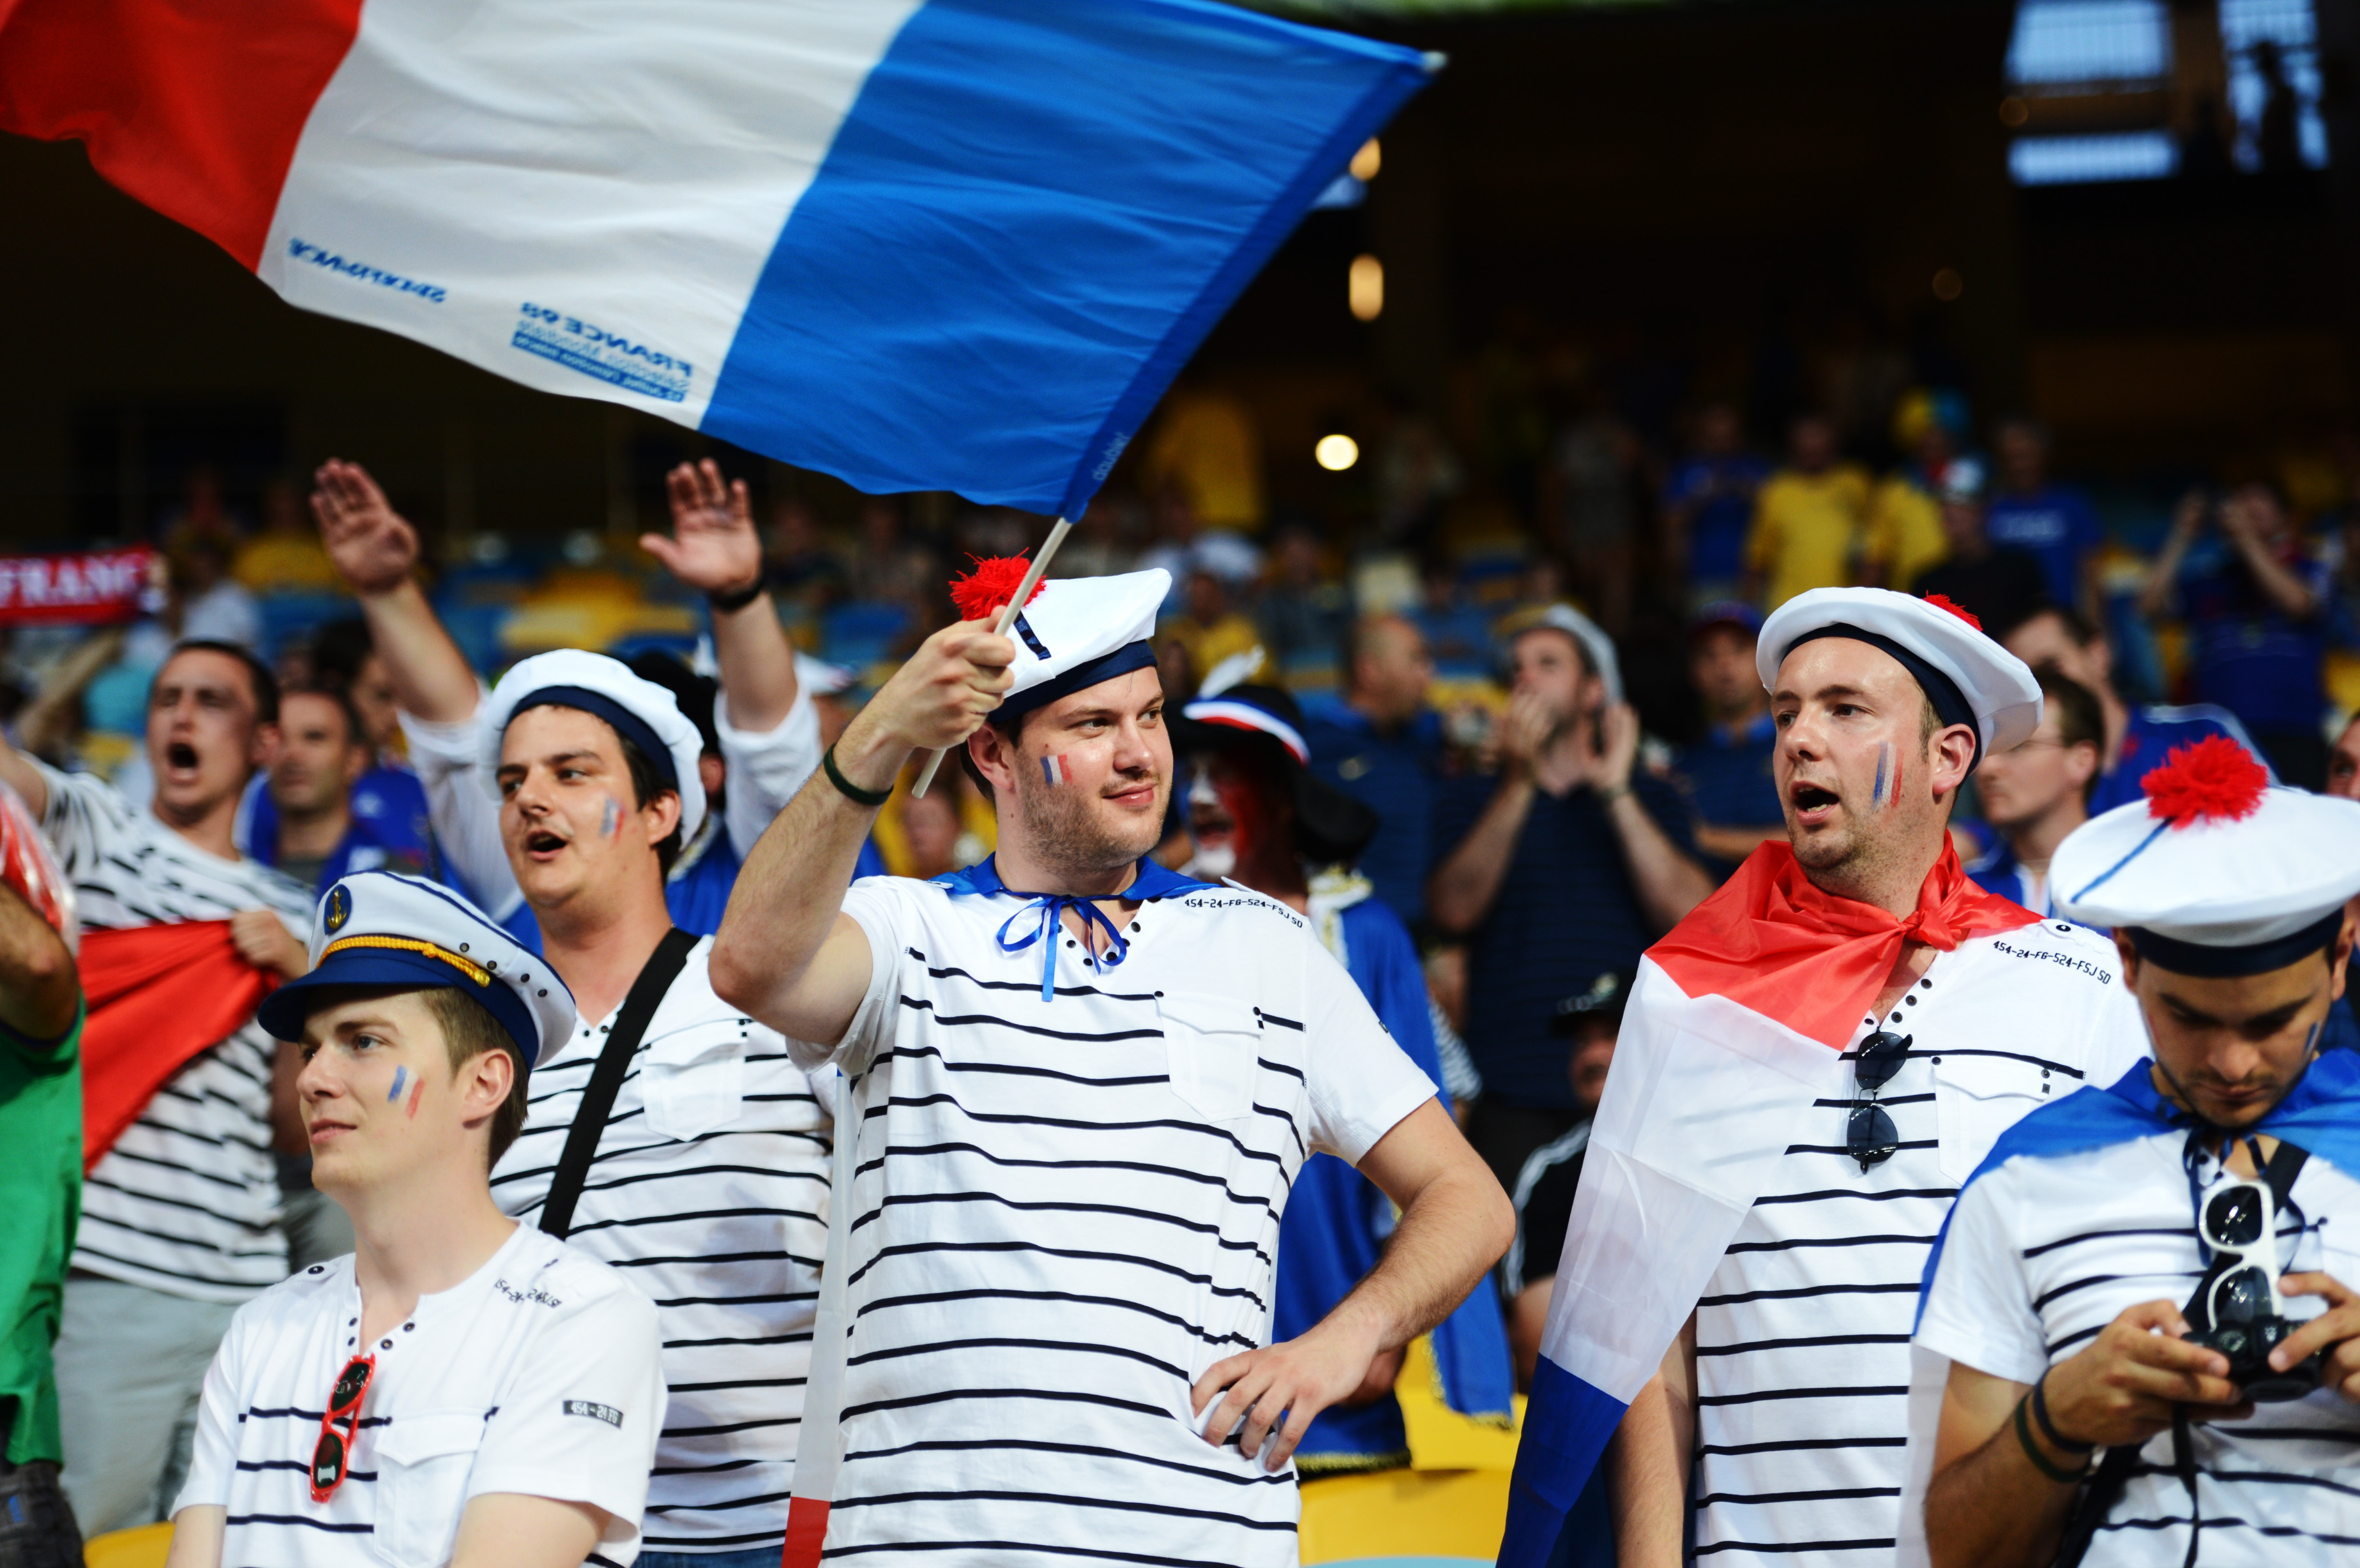 Franska fans inför matchen.